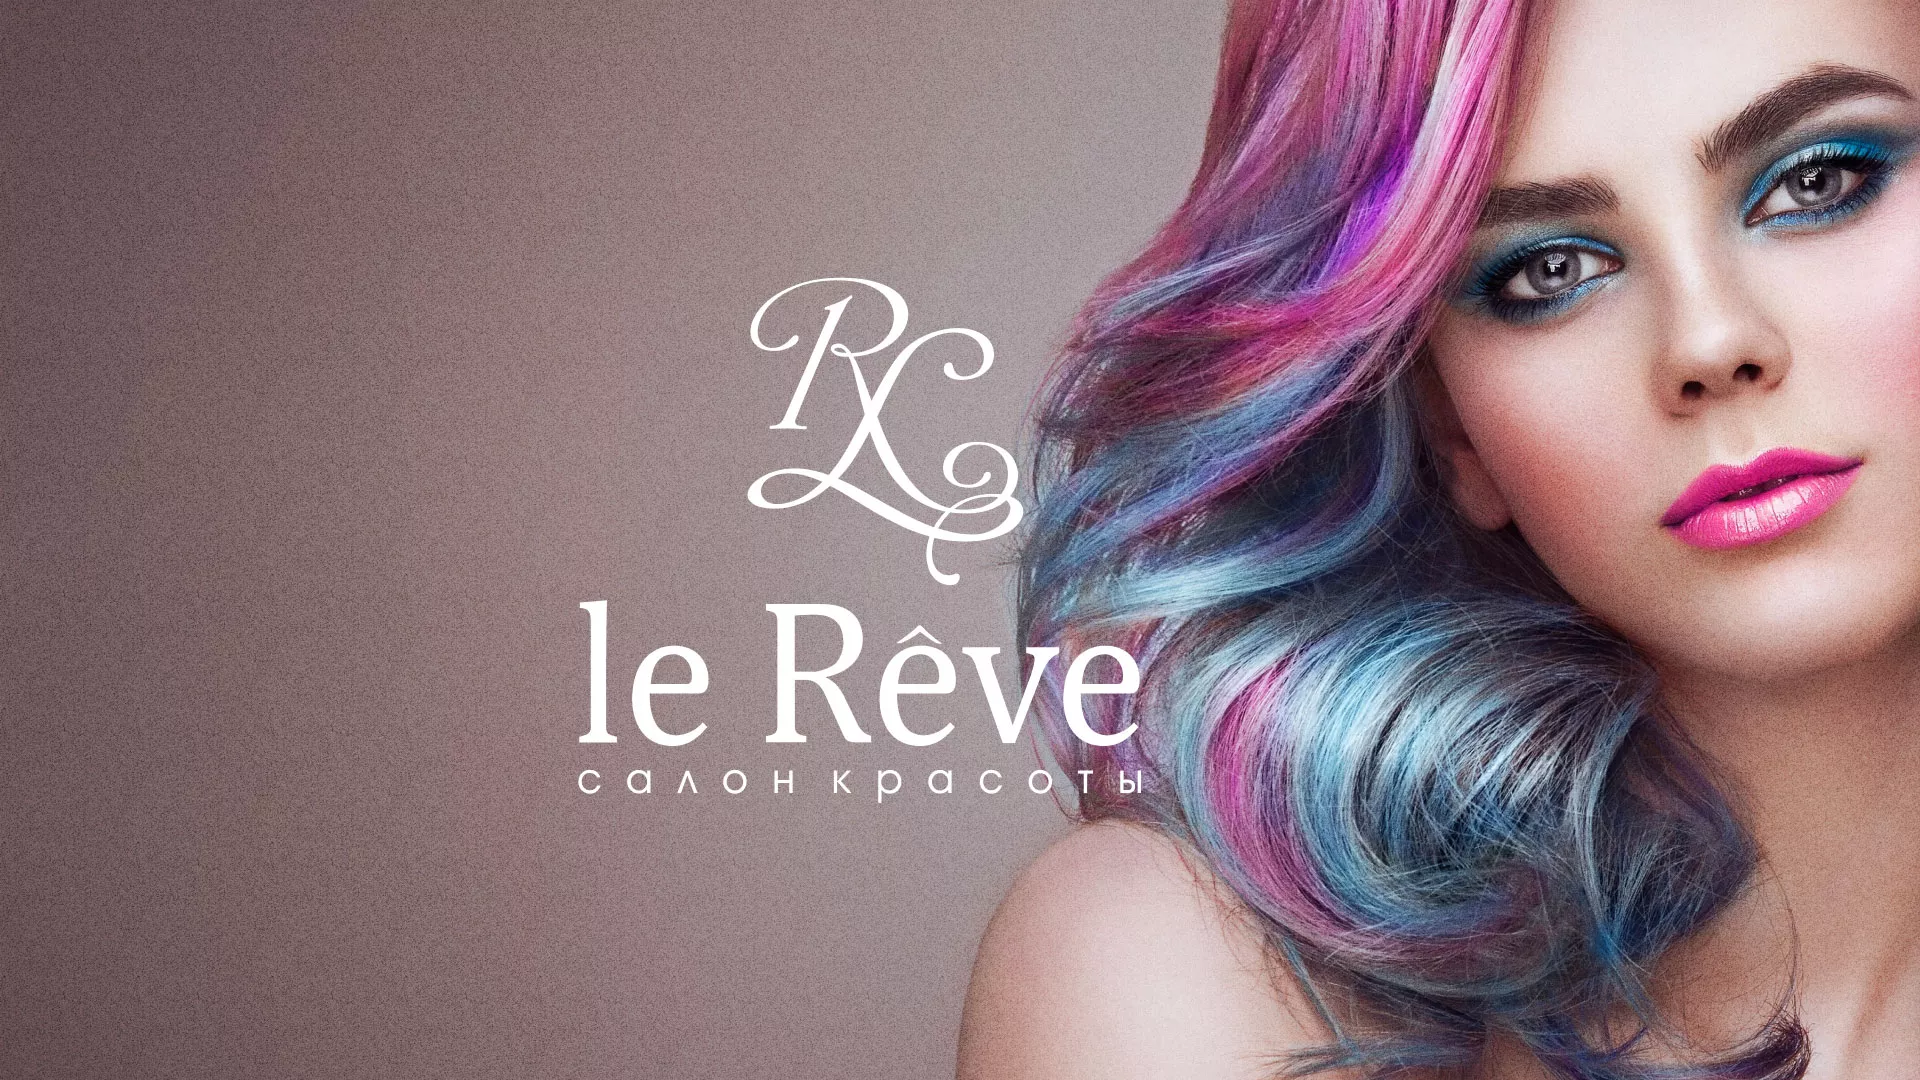 Создание сайта для салона красоты «Le Reve» в Глазове